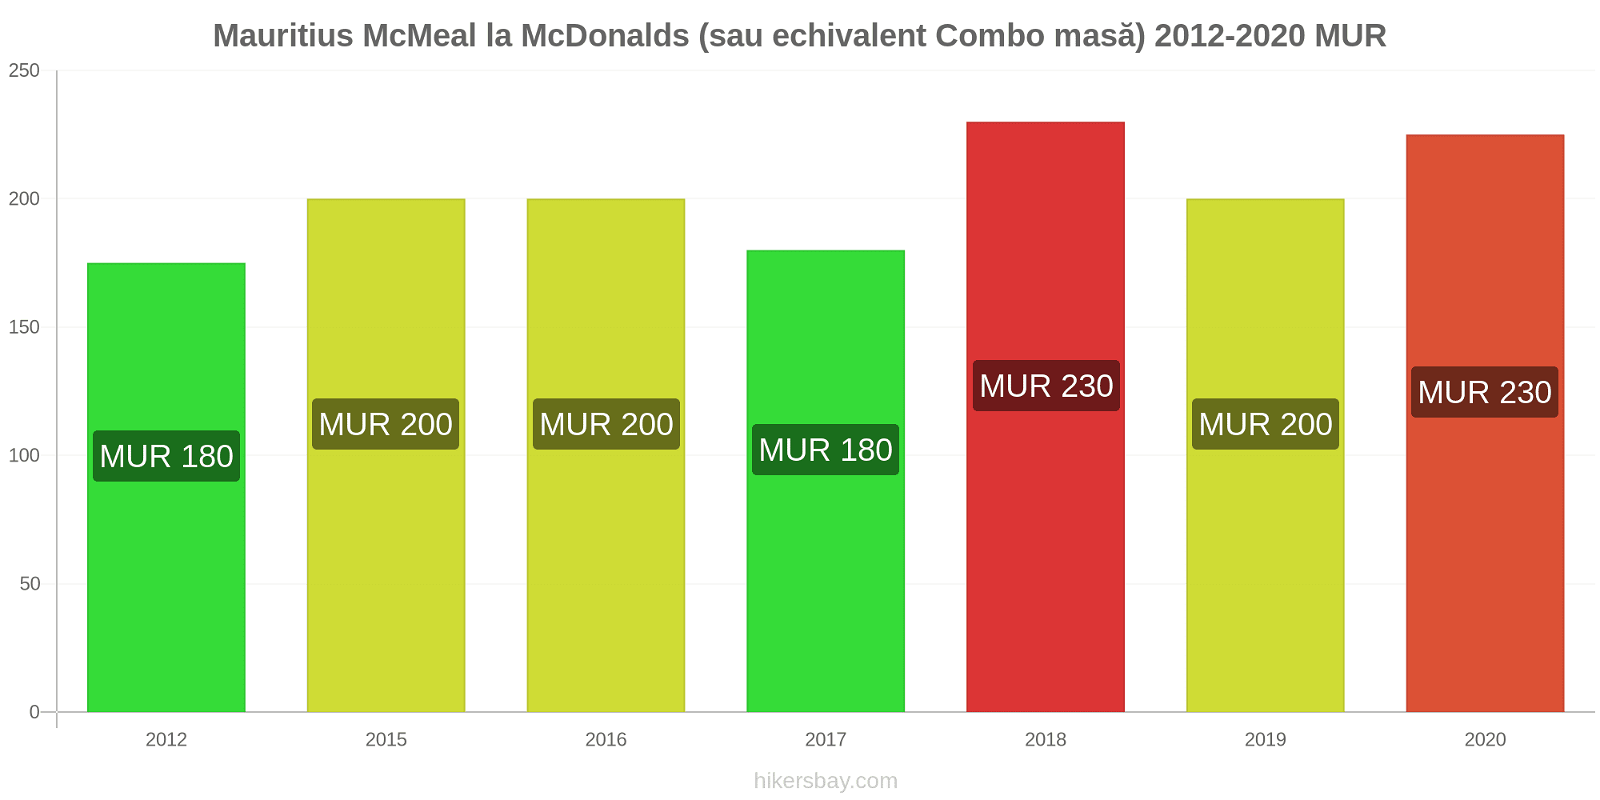 Mauritius modificări de preț McMeal la McDonalds (sau echivalent Combo masă) hikersbay.com